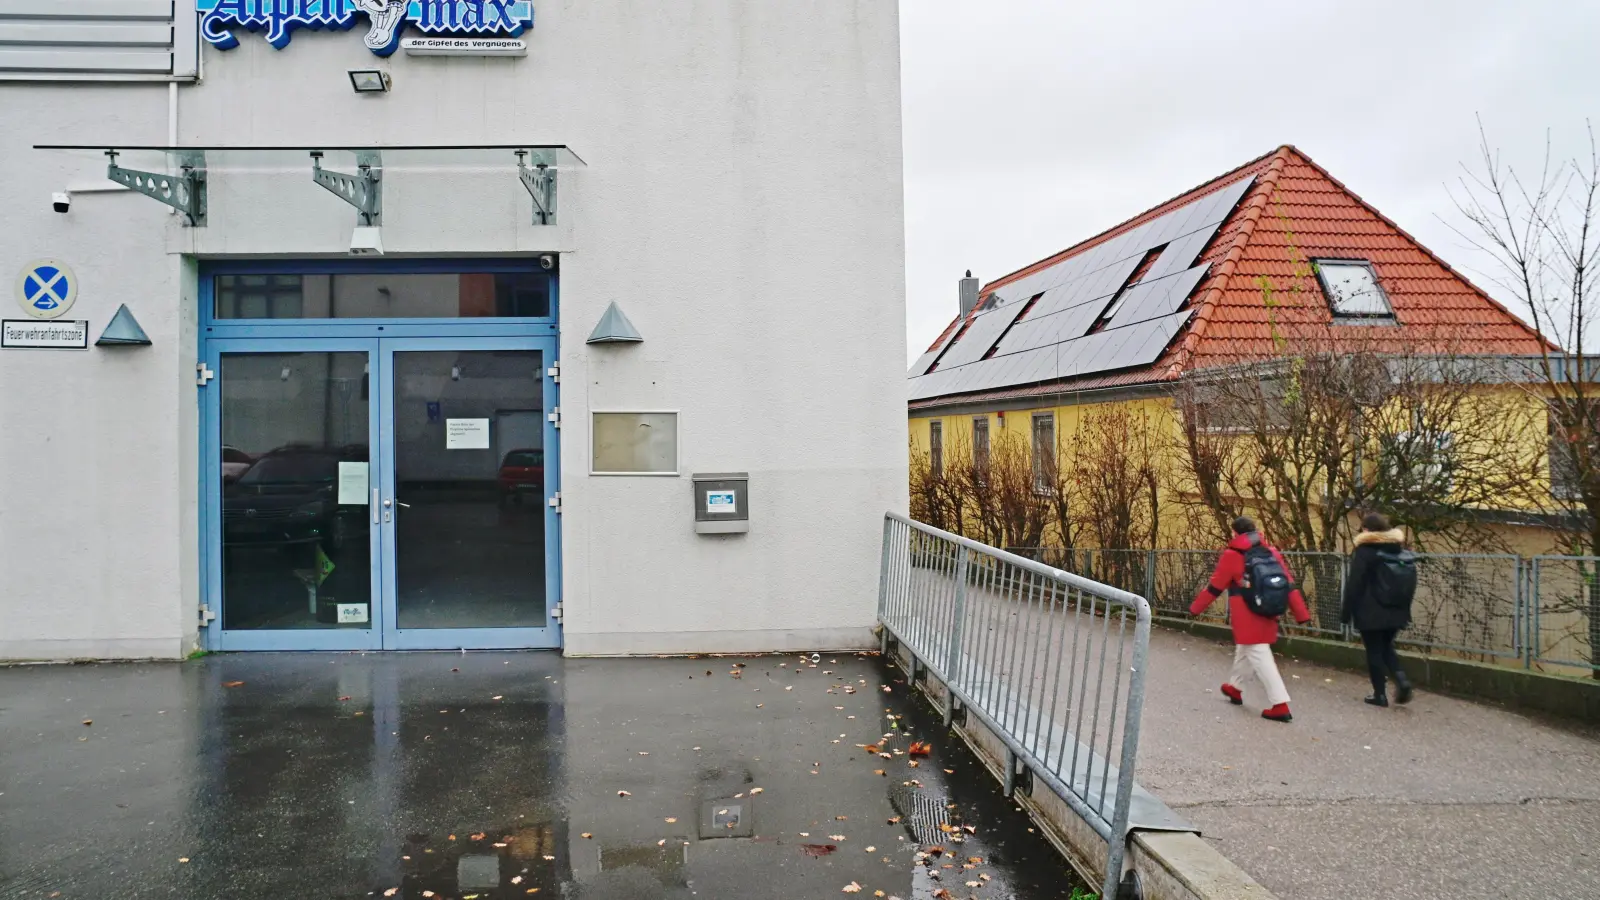 Die Türen der Diskothek Alpenmax in der Draisstraße sind seit März 2020 geschlossen. Wann hier wieder gefeiert werden kann, ist noch offen. Betreiber Feyrüt Zaeteri hofft, dass er dazu bald positive Nachrichten von der Stadt Ansbach bekommt. (Foto: Jim Albright)